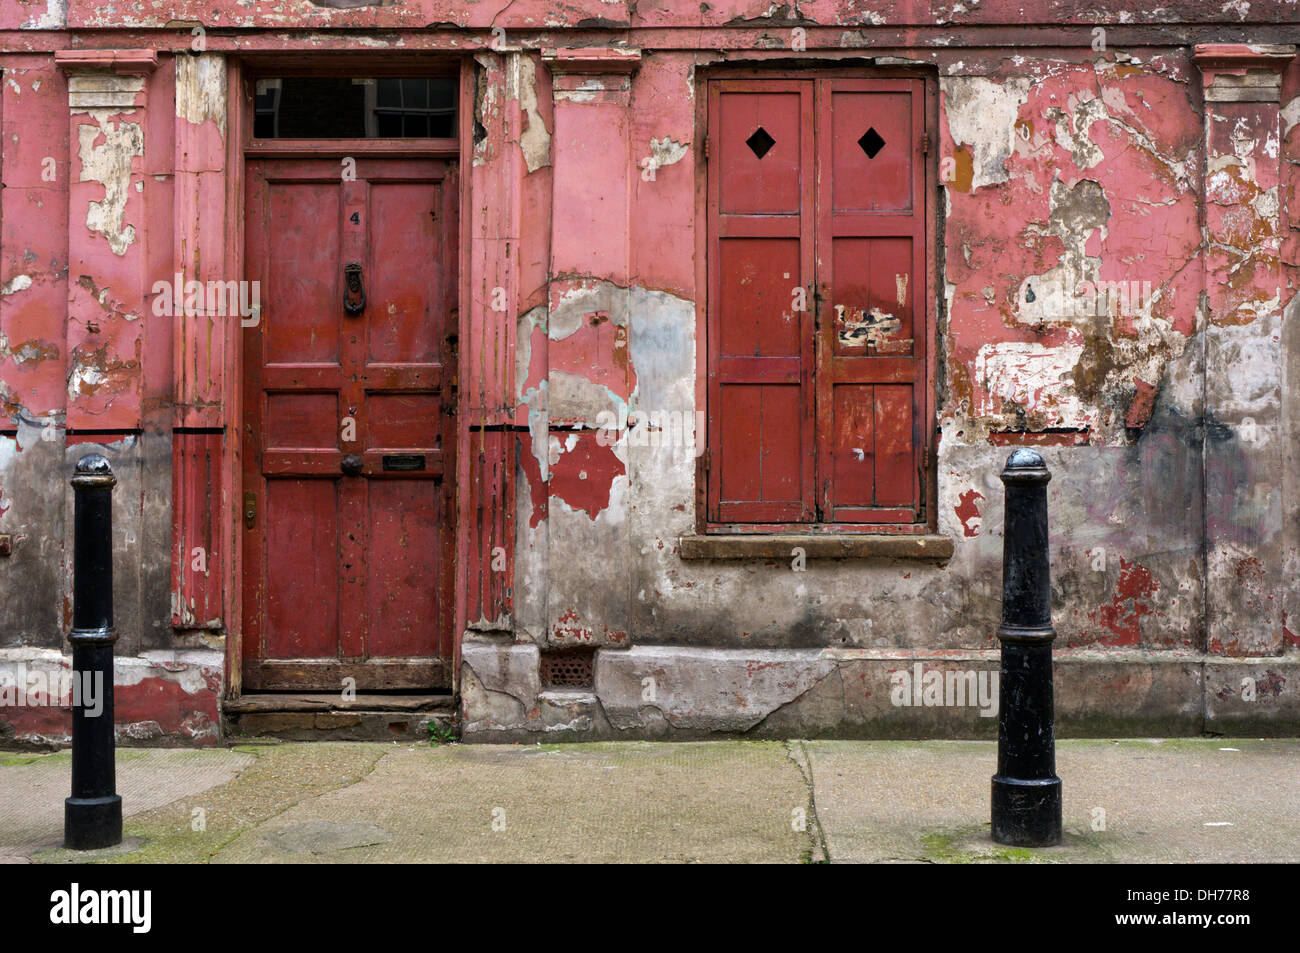 Le peeling et délabrées à l'extérieur d'un logement en Princelet Street, Spitalfields. Banque D'Images